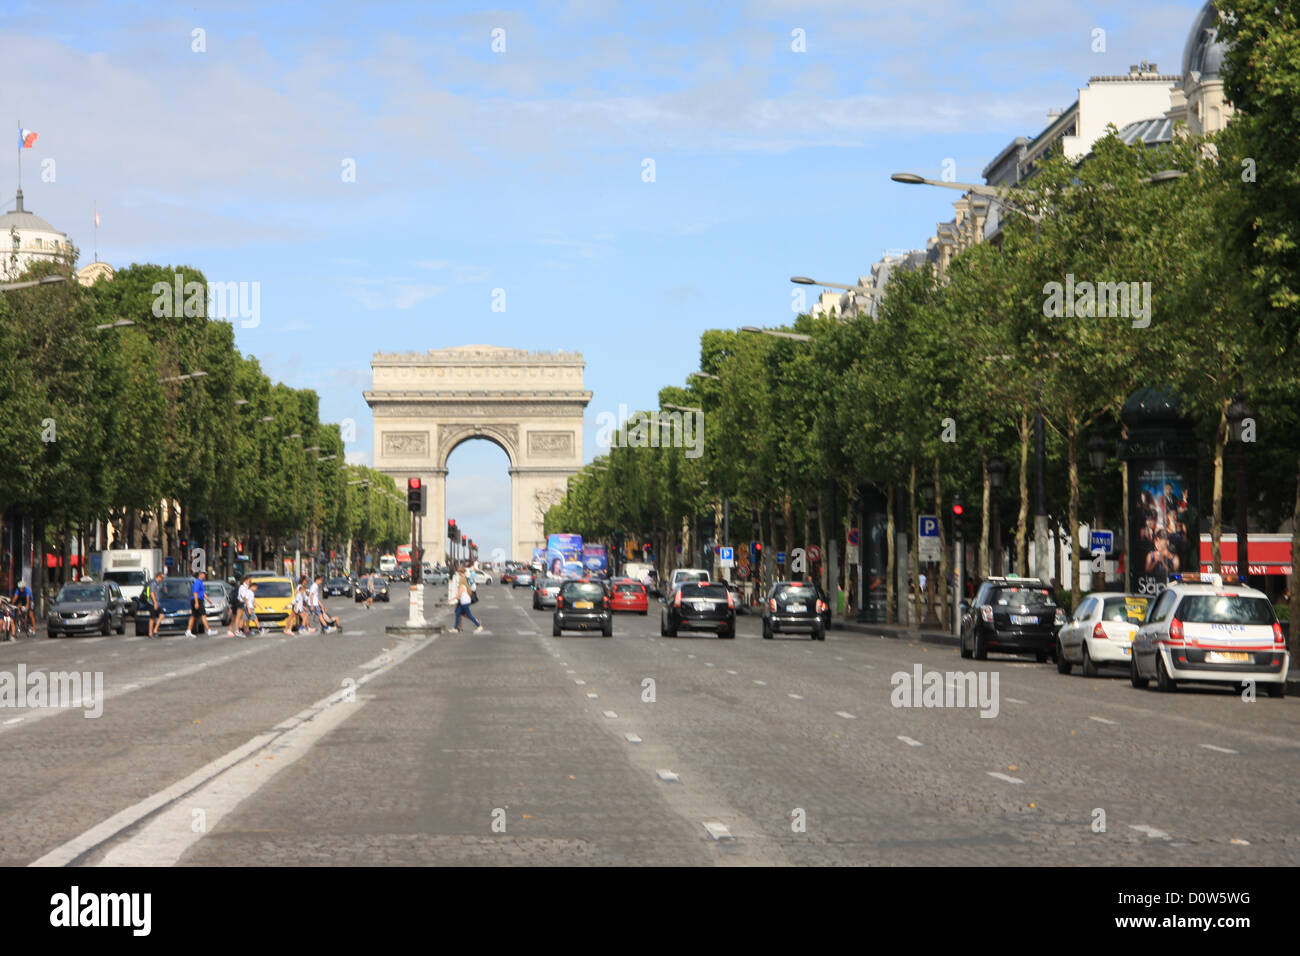 Paris, Europe, France, Champs Elysees, street, avenue, Arc de Triomphe, triumphal arch Stock Photo